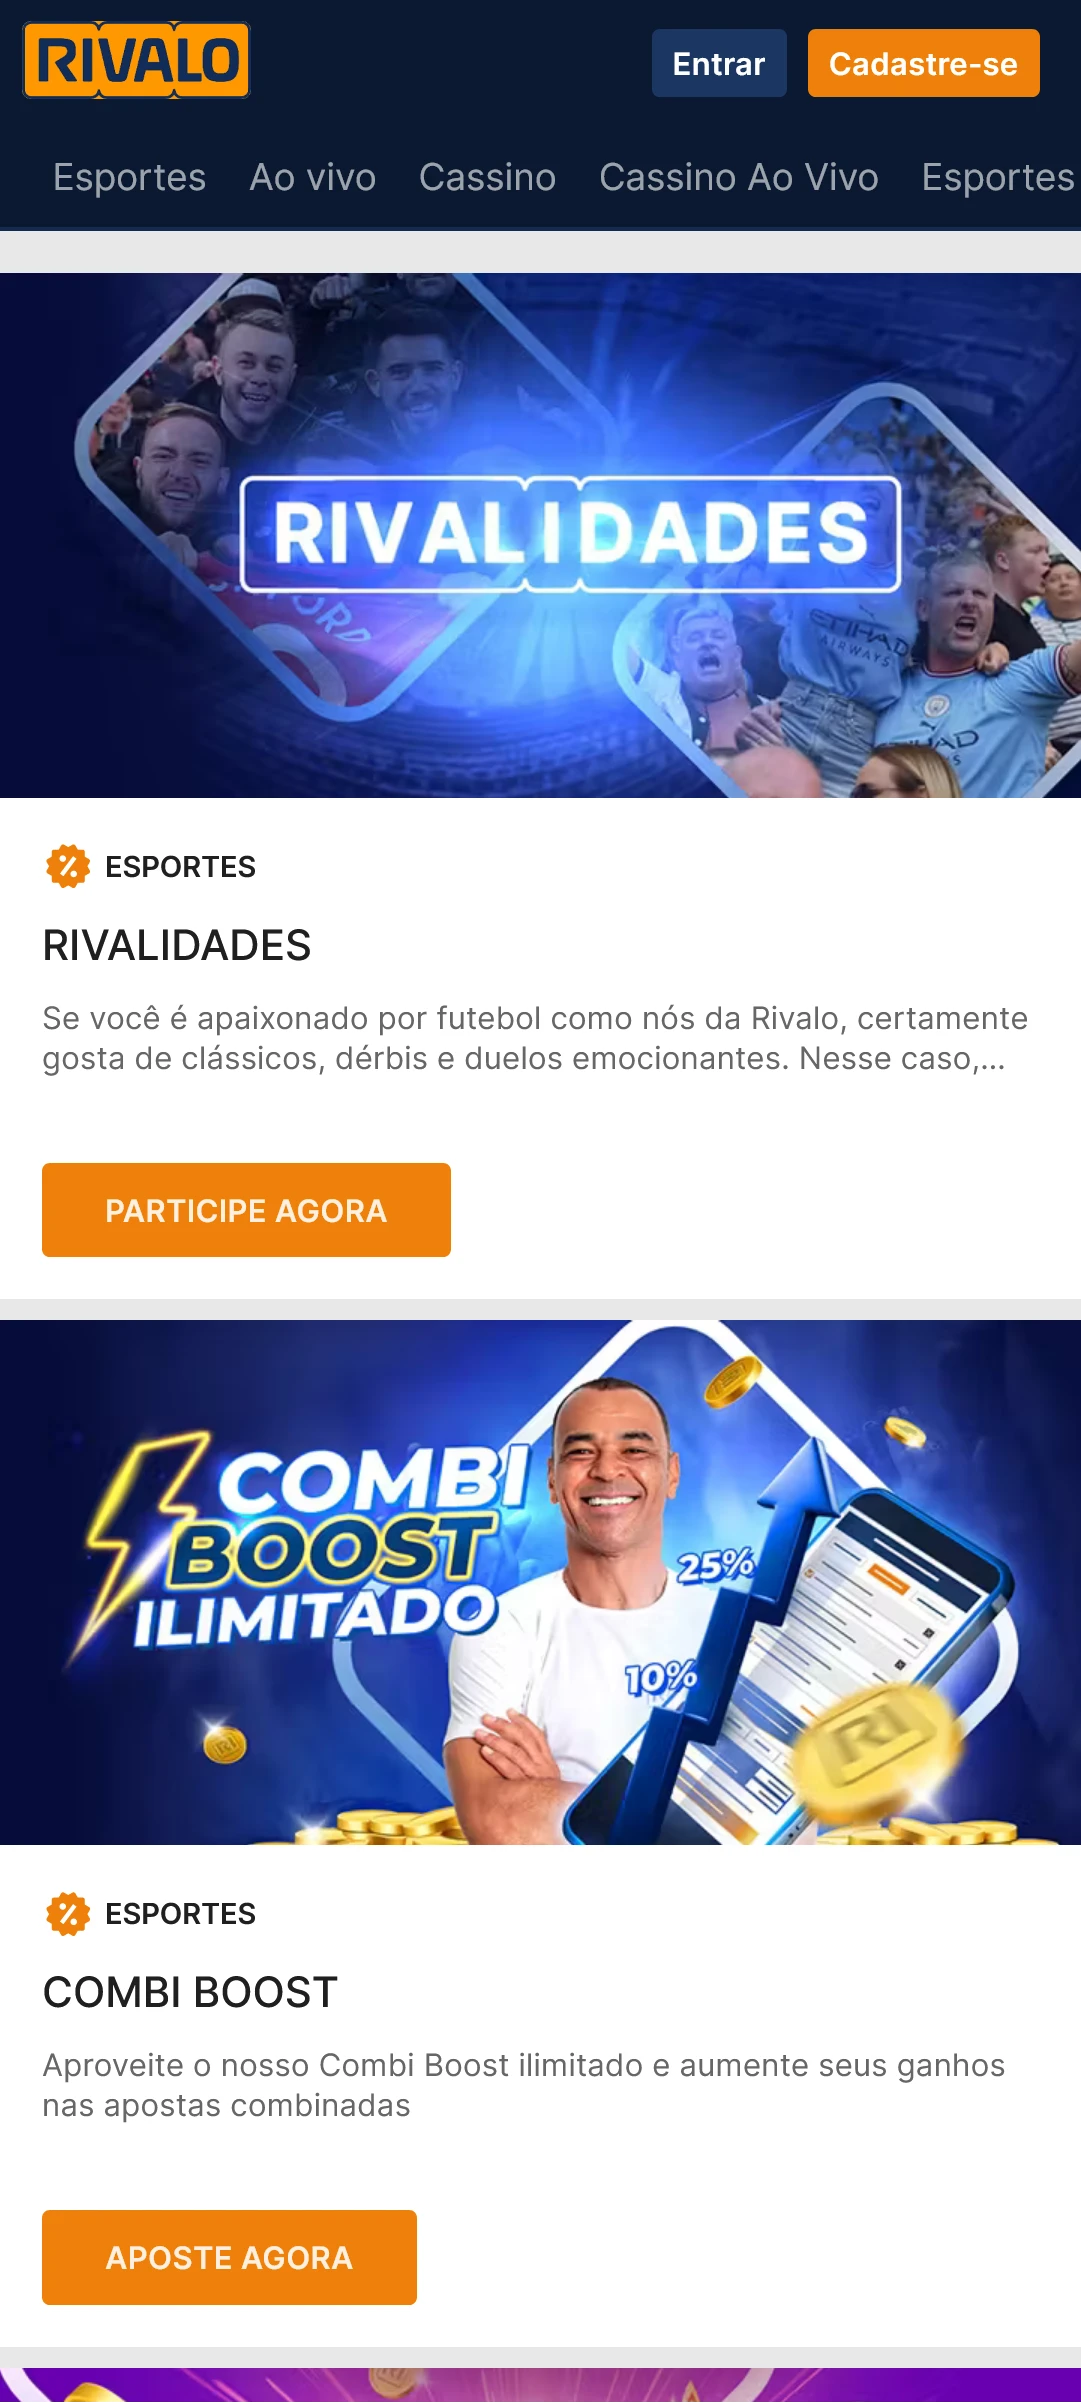 Captura de tela da página de promoções e bônus no aplicativo Rivalo